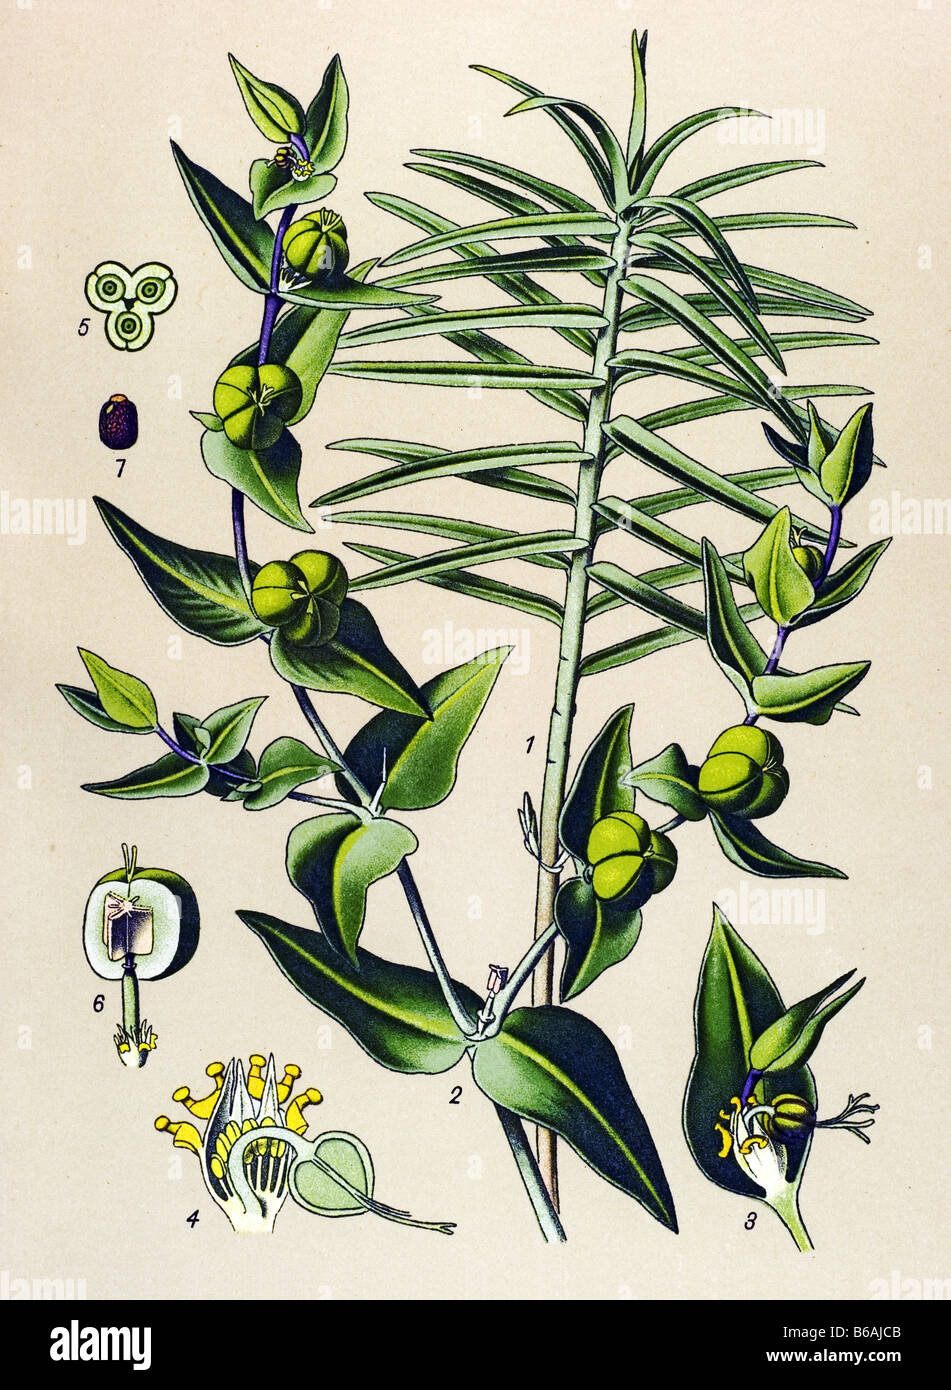 Caper Spurge, Euphorbia lathyris poisonous plants illustrations Stock Photo